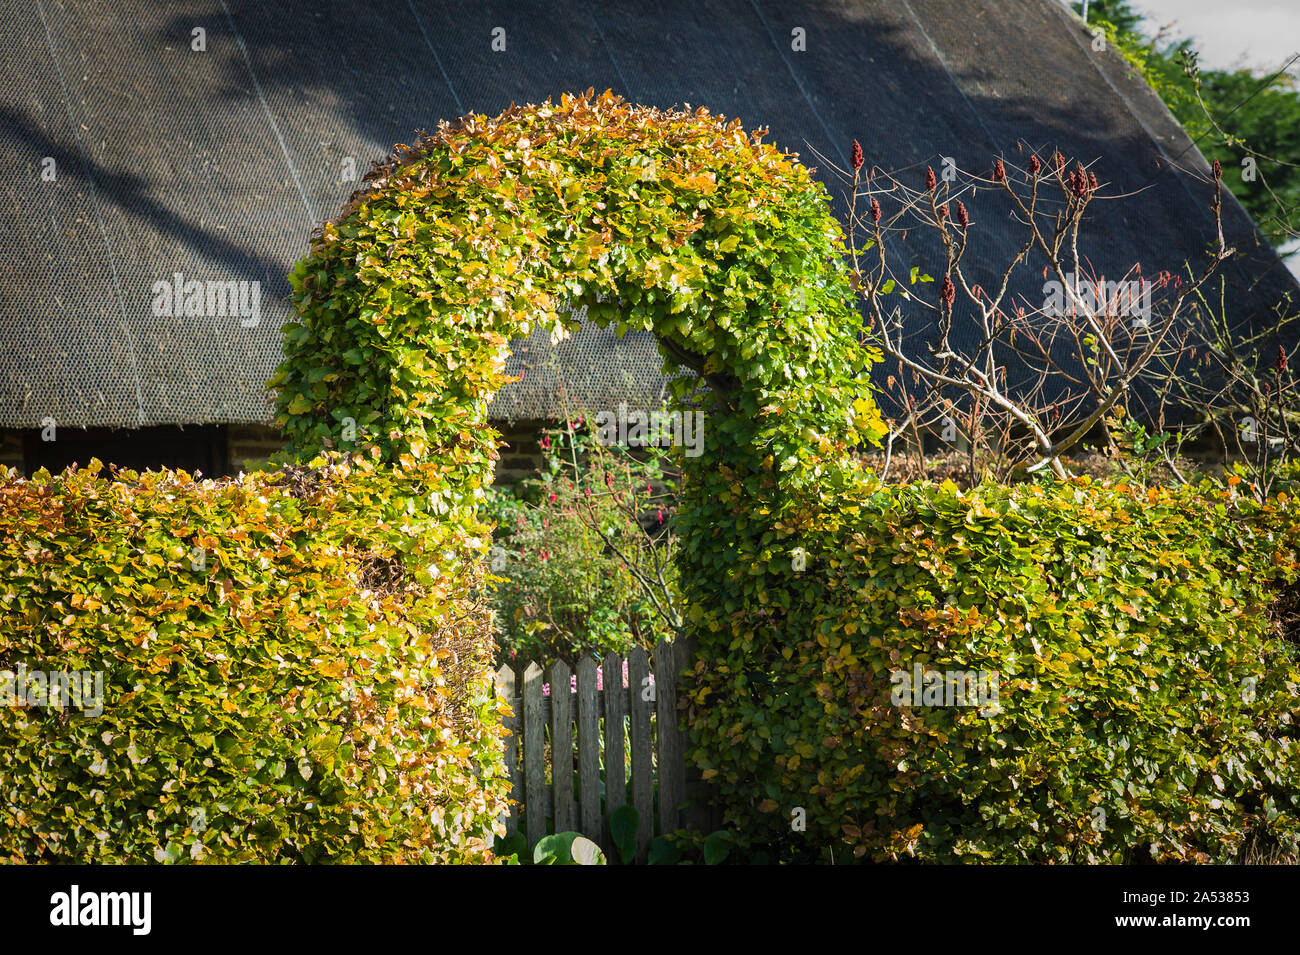 Une haie de hêtre façonné pour former une arche au-dessus d'un jardin d'accès à la propriété, y compris un cottage au toit de chaume déduits dans le Wiltshire England UK Banque D'Images